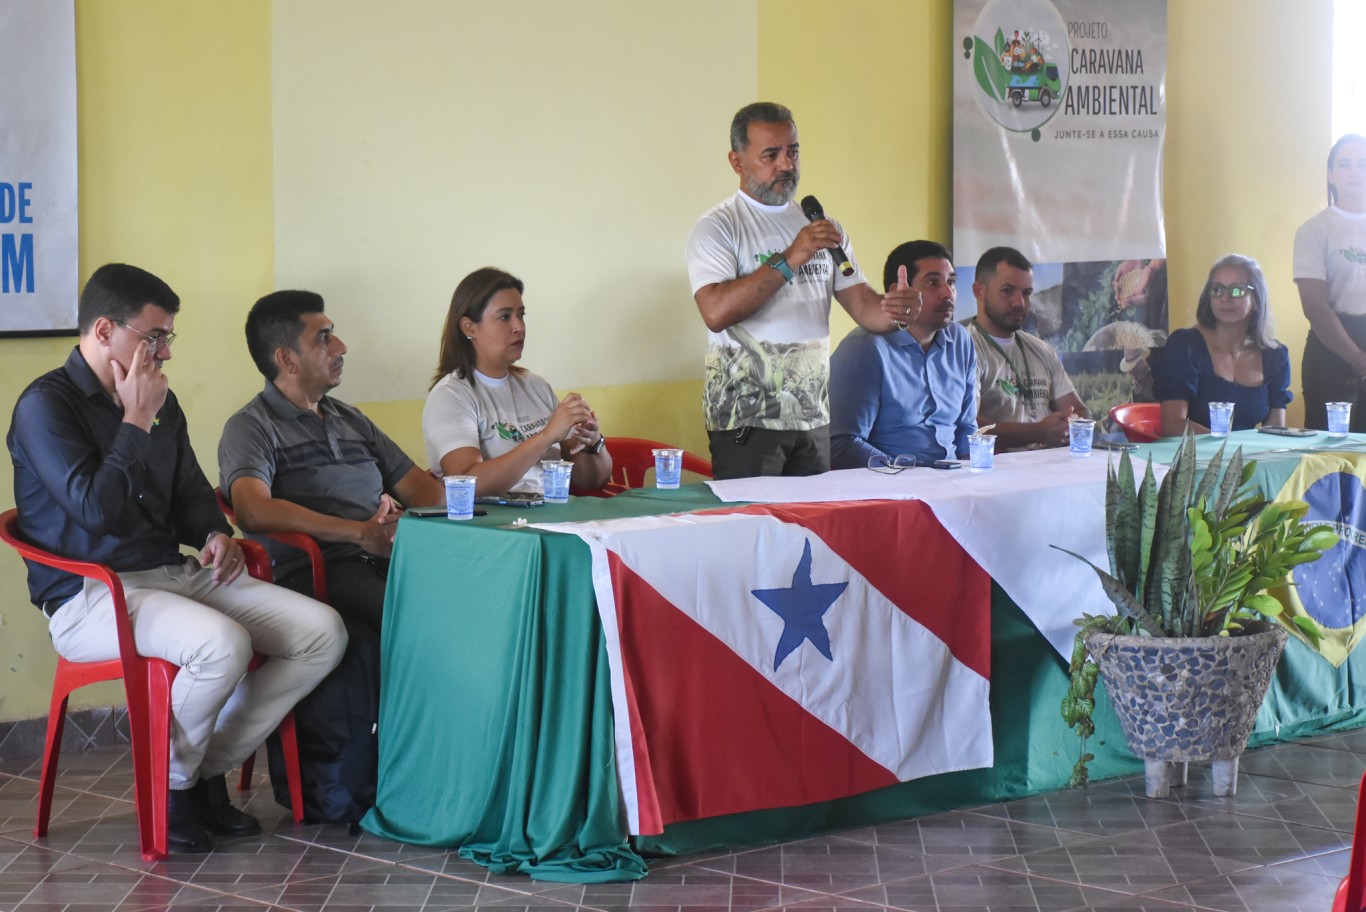 Projeto Caravana Ambiental recebe moção de aplausos da Câmara Municipal de Santarém   